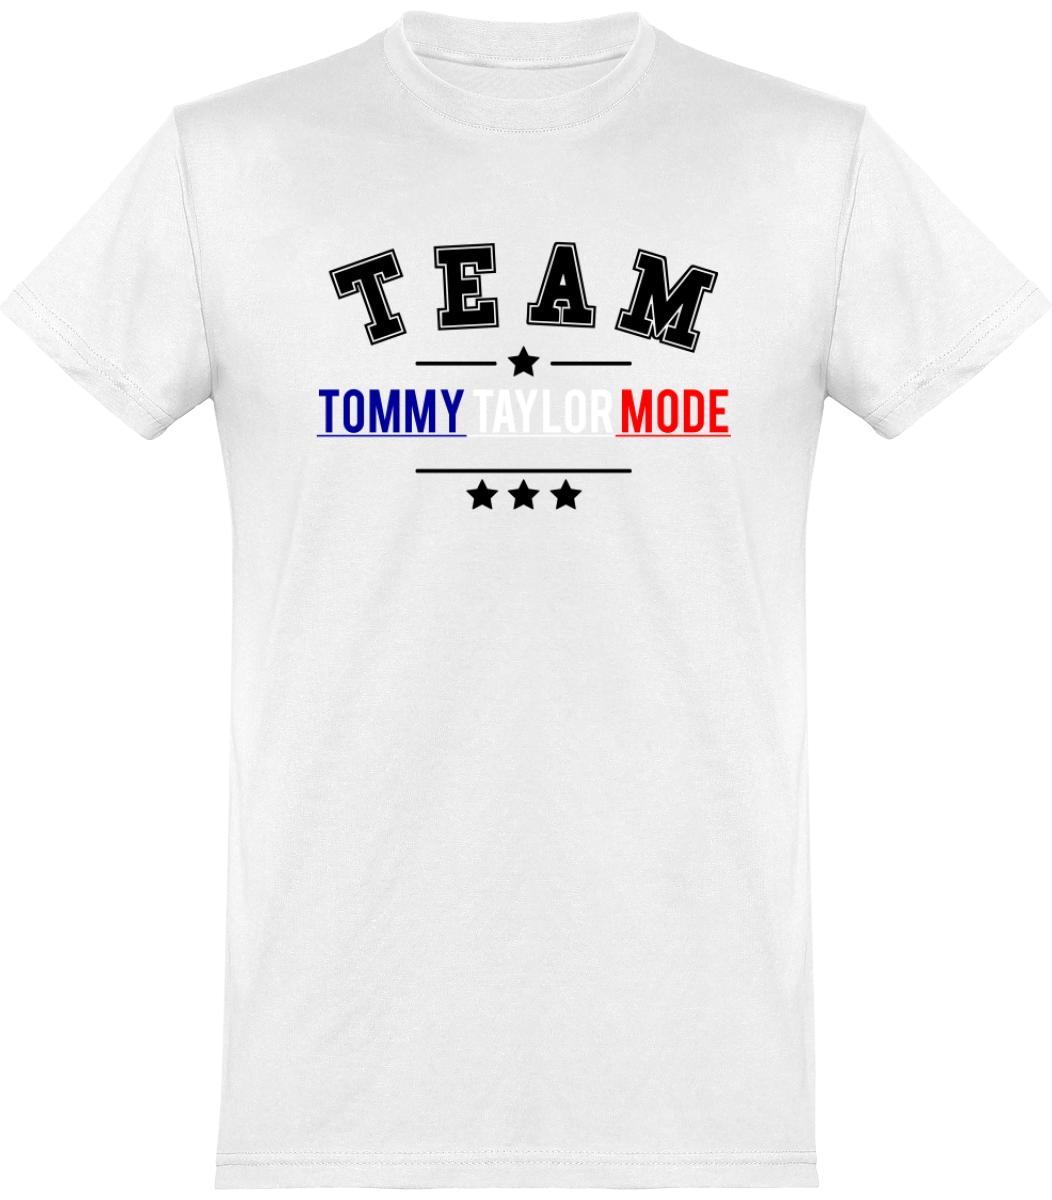 NOUVEAUTÉ: T-shirt Col Rond TEAM Tommy Taylor Mode Made In France. Imprimés et brodés en FRANCE